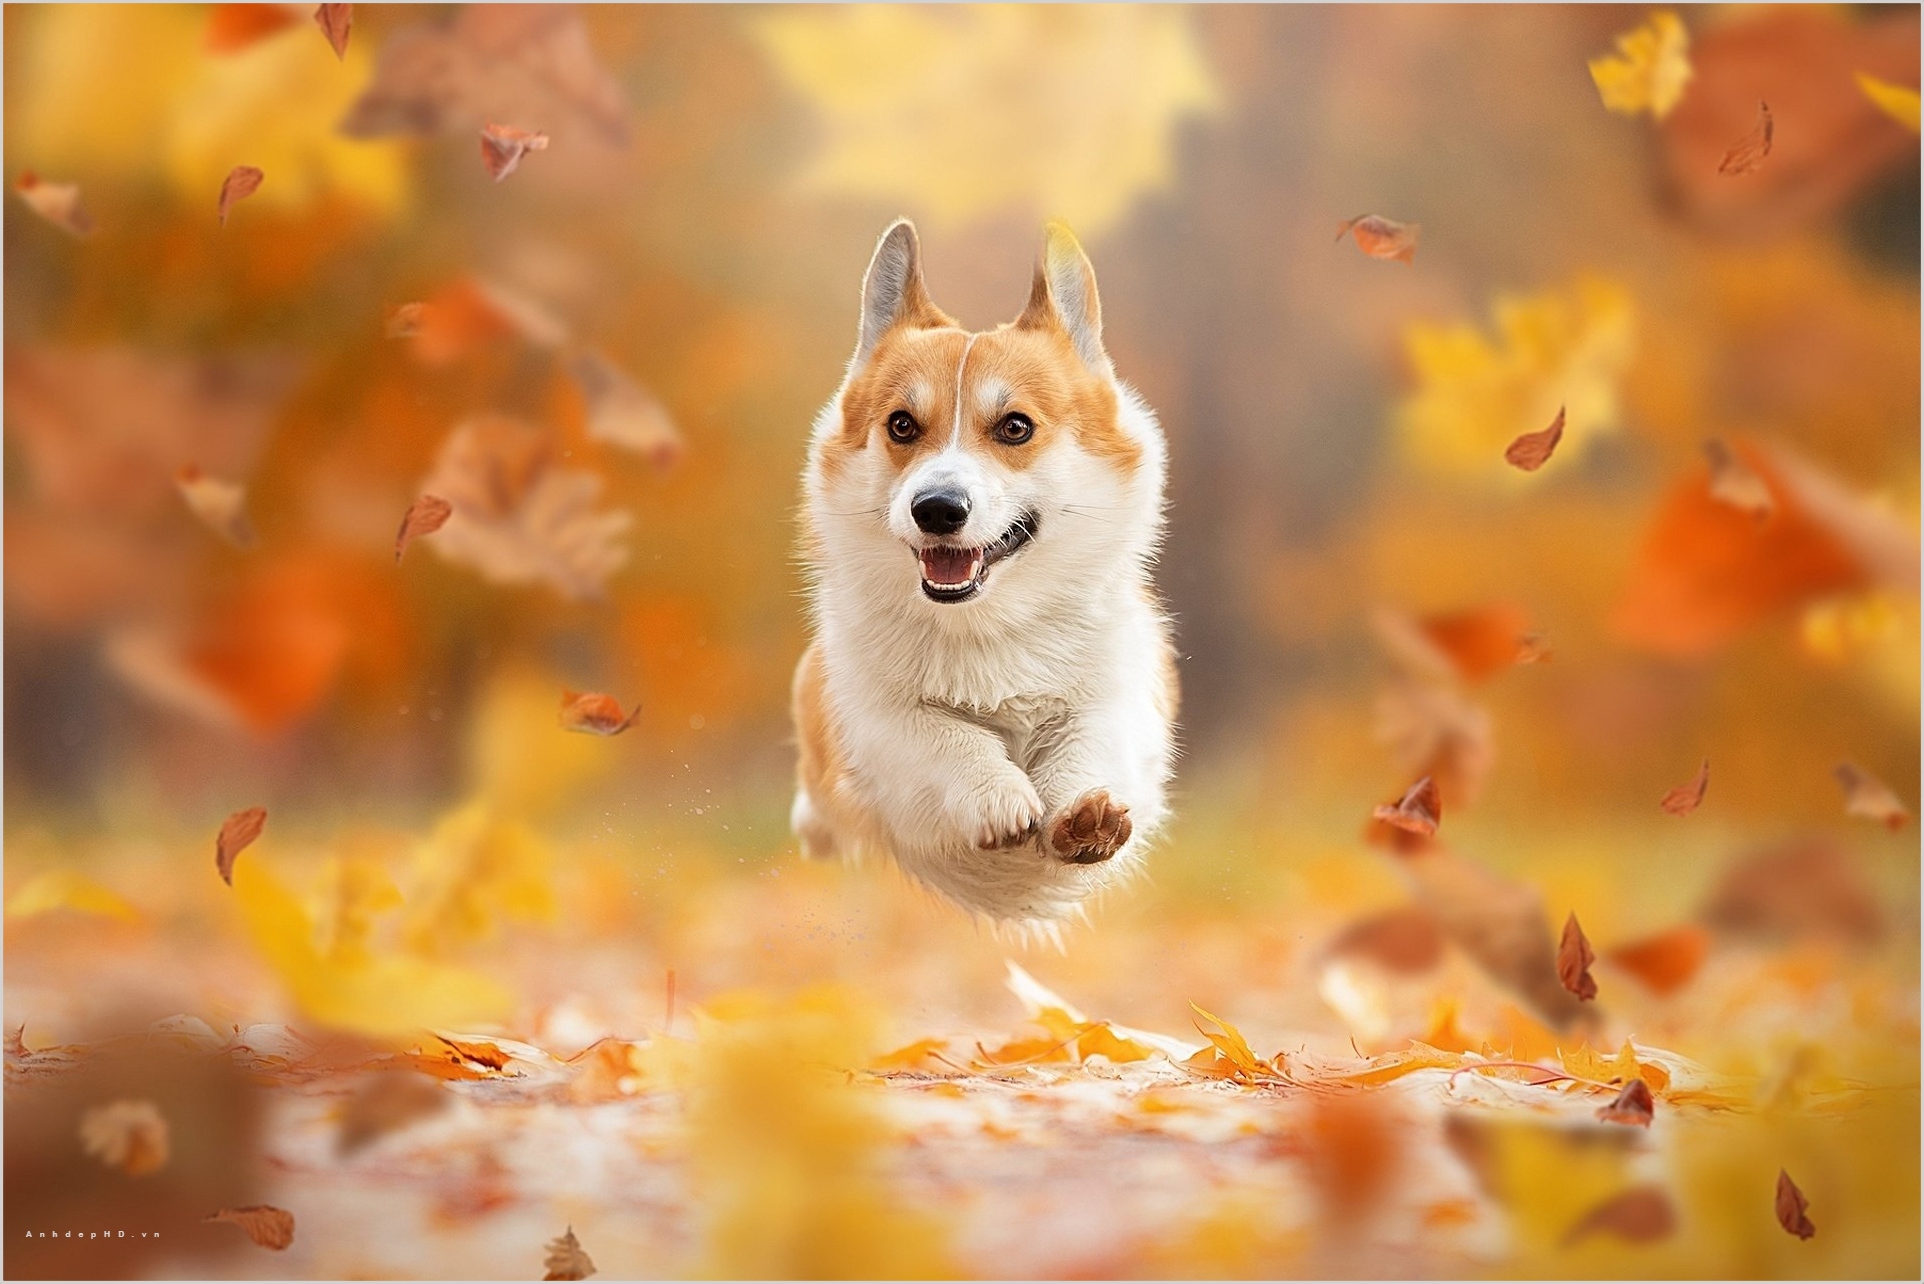 Hình ảnh chó đẹp chắc chắn sẽ góp phần làm cho không gian sống của bạn trở nên sinh động và đầy màu sắc hơn. Hãy xem ngay những hình ảnh nổi bật về chó đáng yêu này!